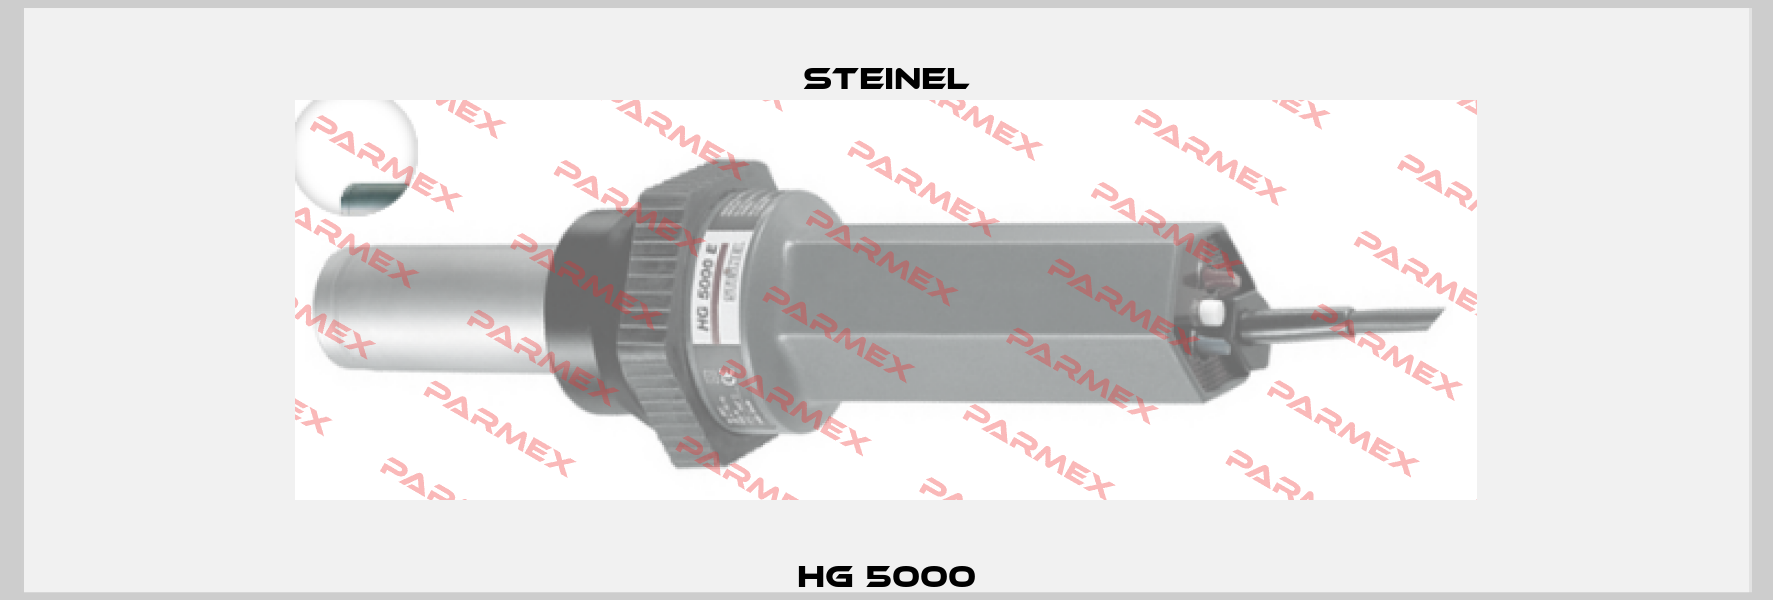 HG 5000 Steinel